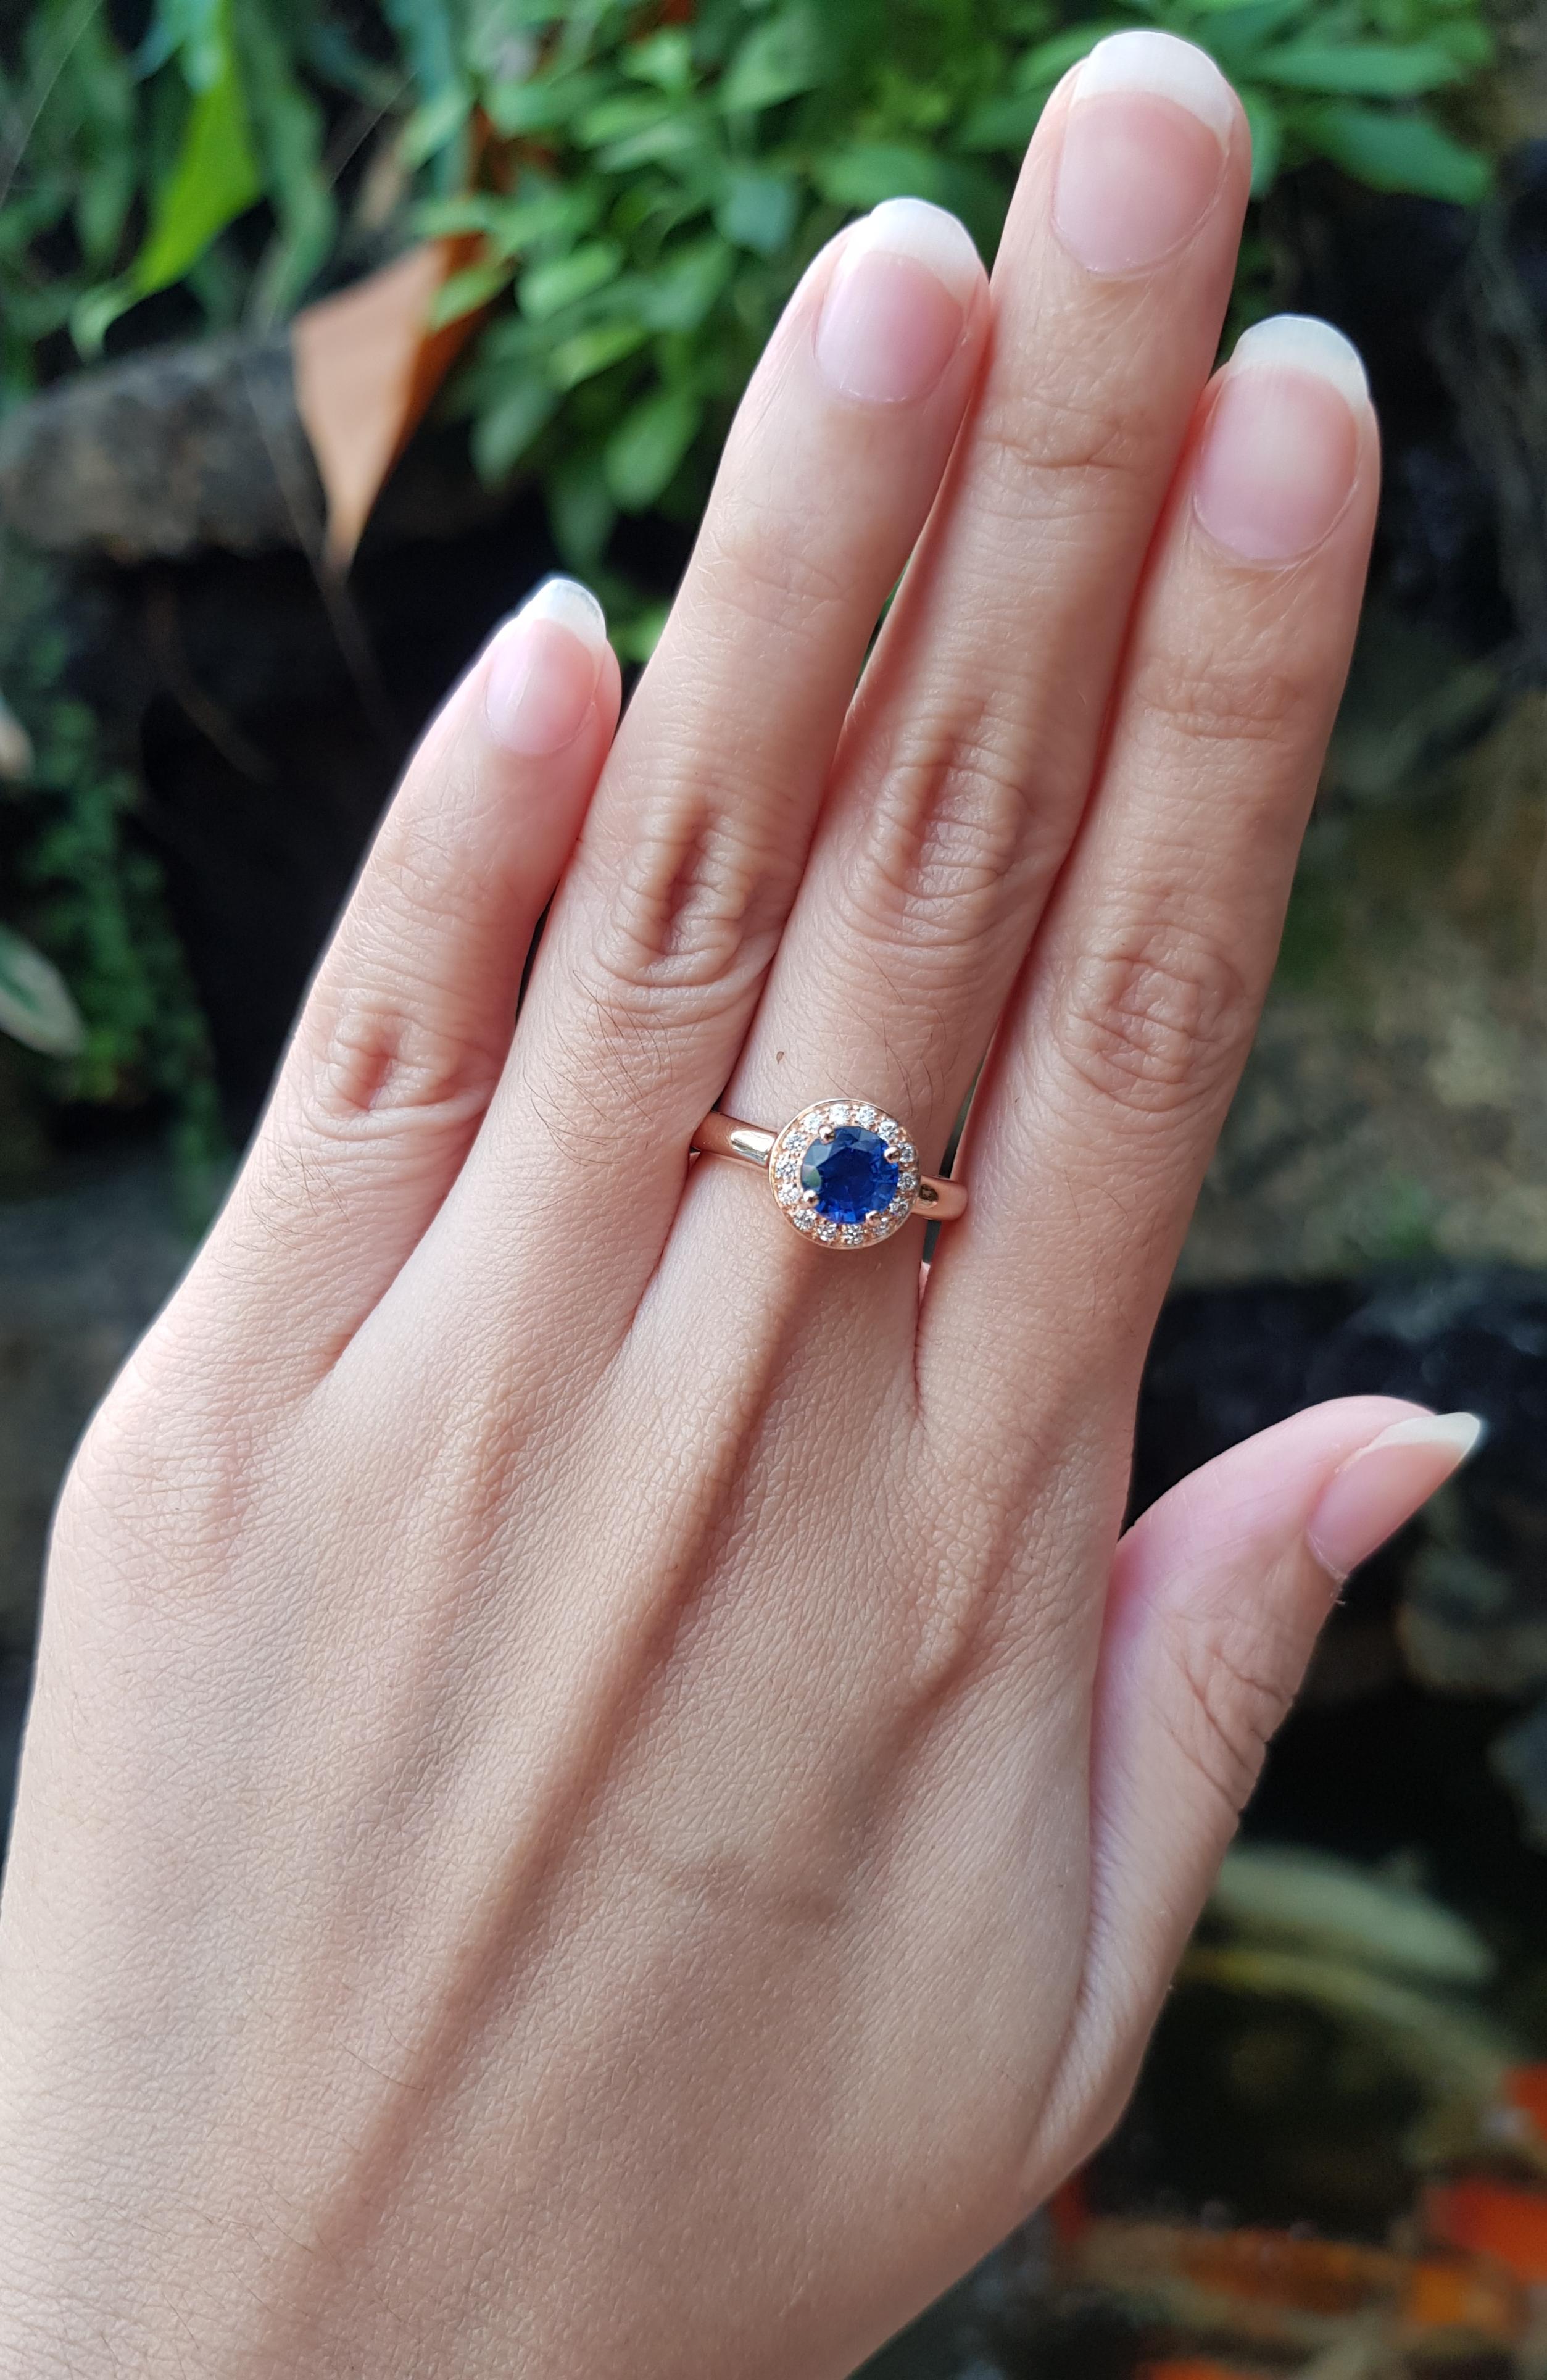 Blauer Saphir 1,31 Karat mit Diamant 0,14 Karat Ring in 18 Karat Roségold gefasst

Breite:  0.9 cm 
Länge: 0,9 cm
Ringgröße: 53
Gesamtgewicht: 4,43 Gramm

